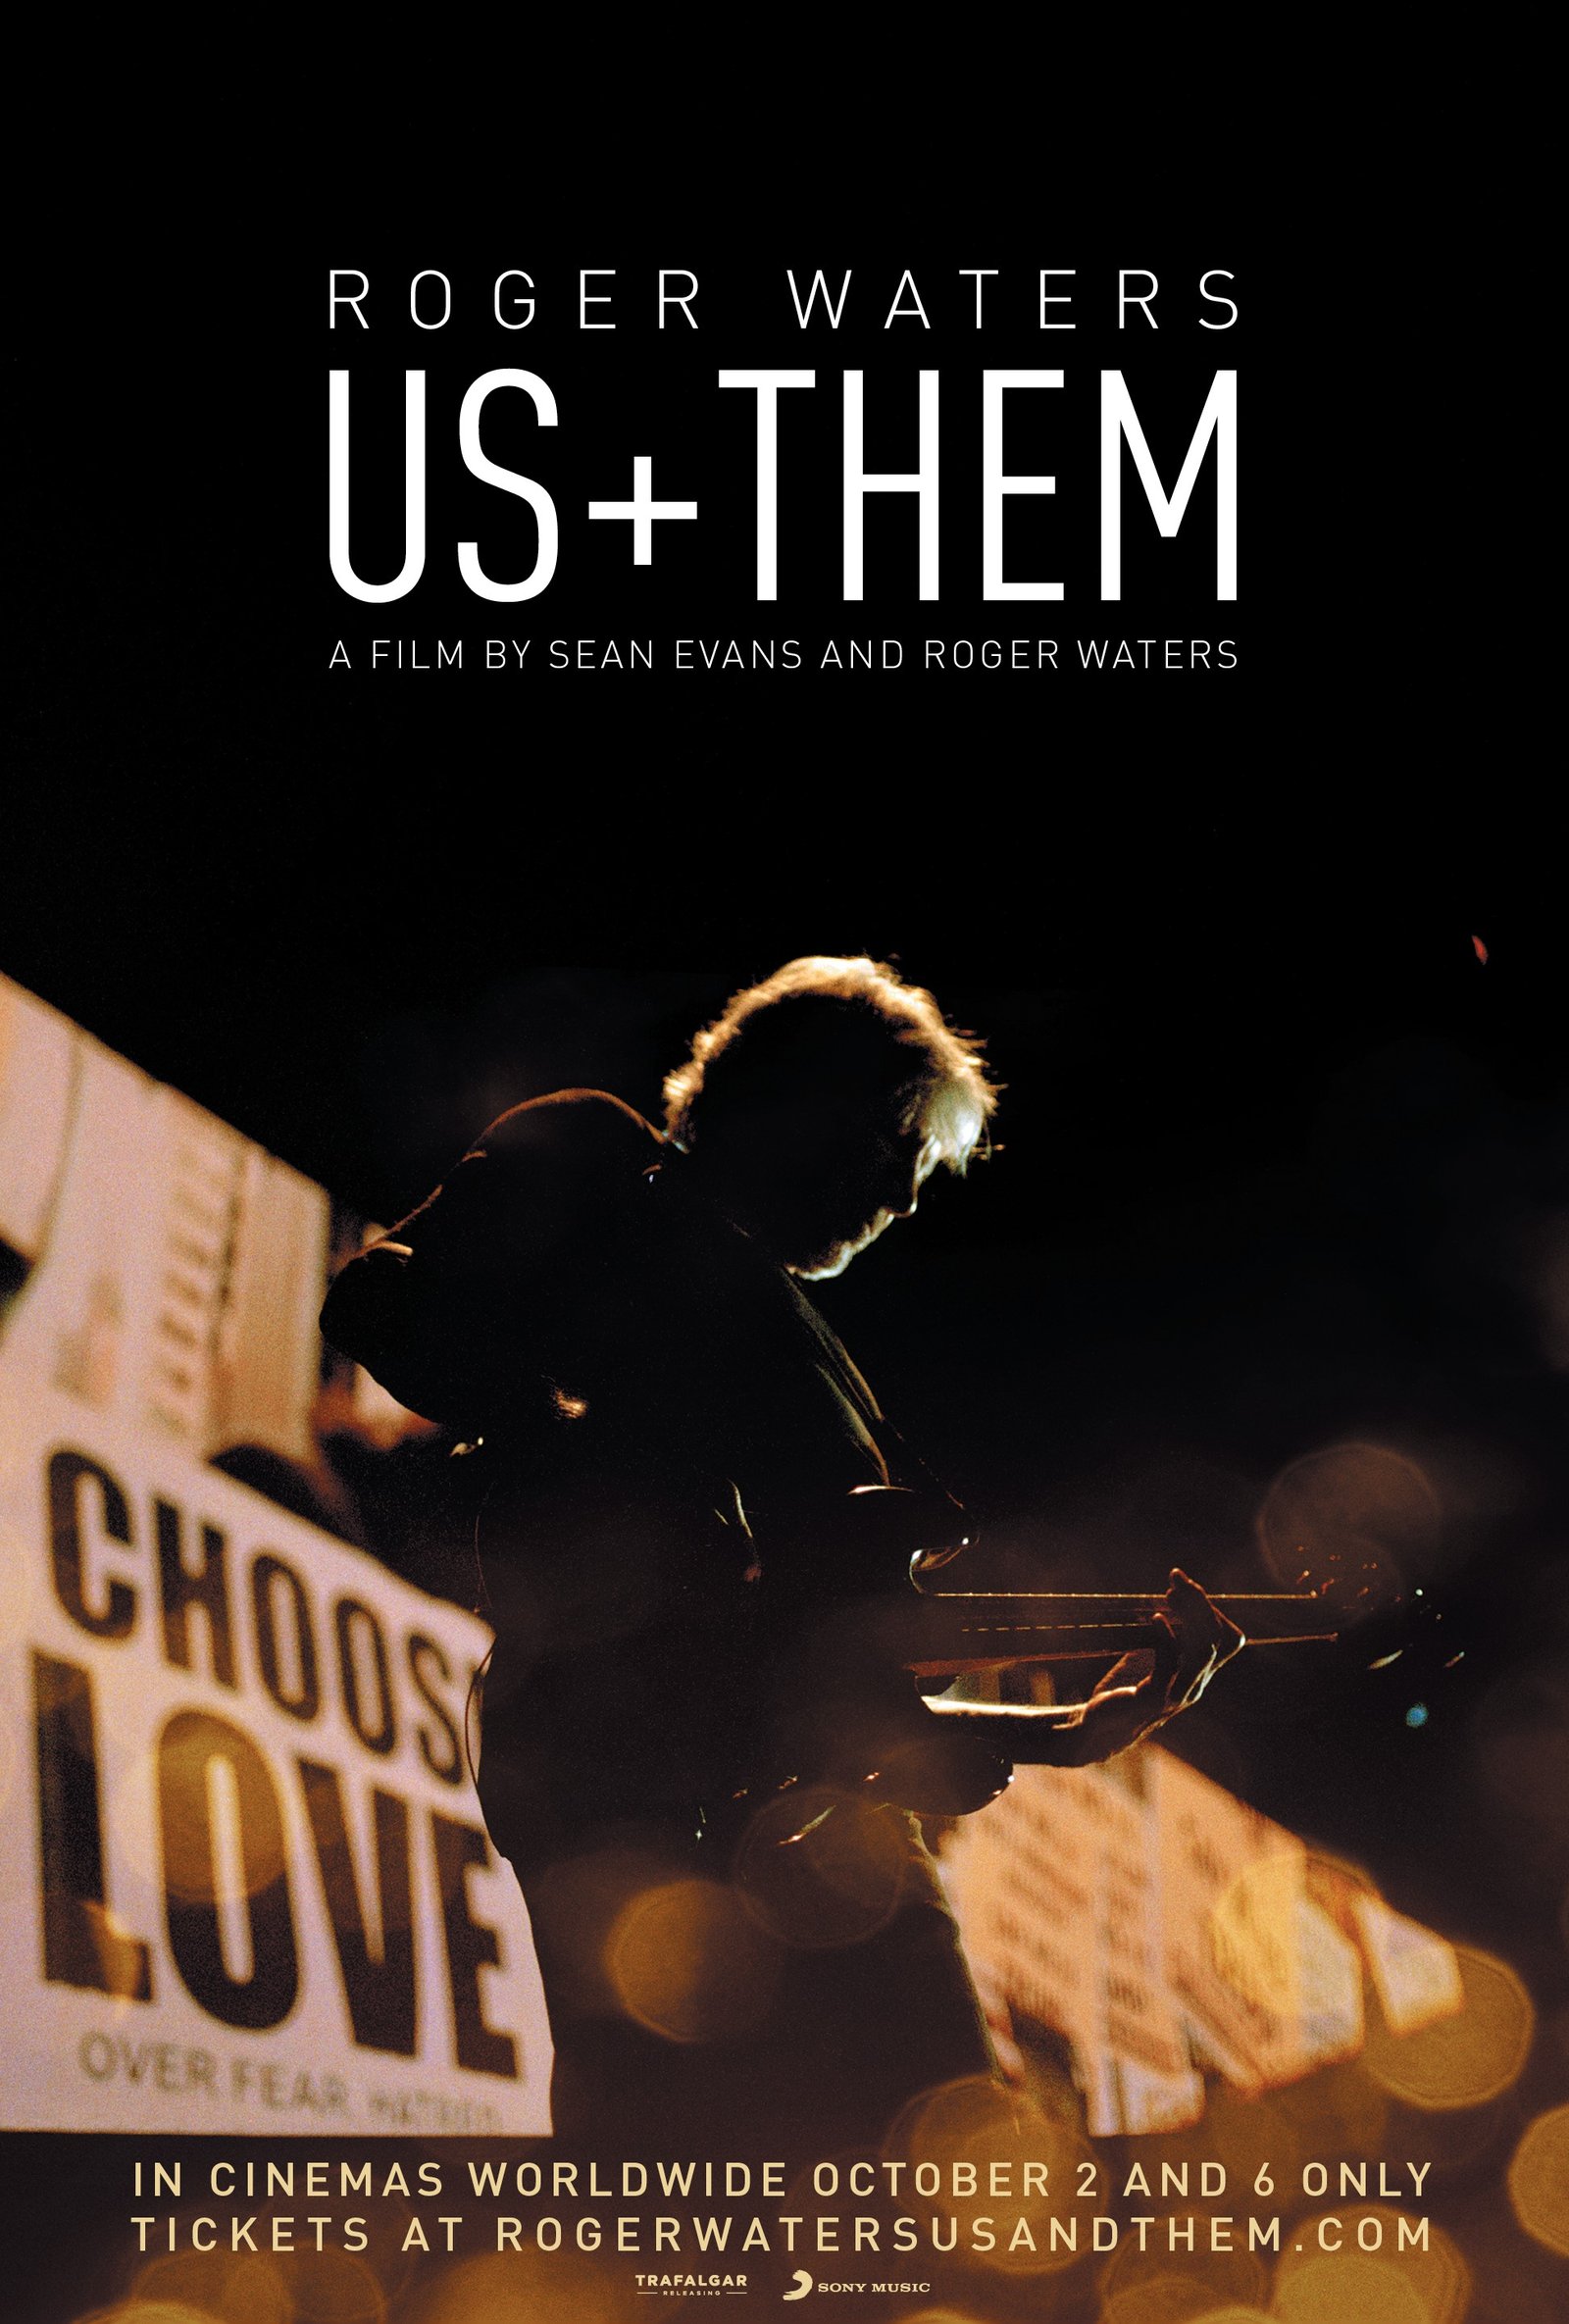 ARTE ROGER WATERS FILM Roger Waters lanza trailer de su película, 'Us + Them' Summa Inferno | Metal + Rock & Alternative Music